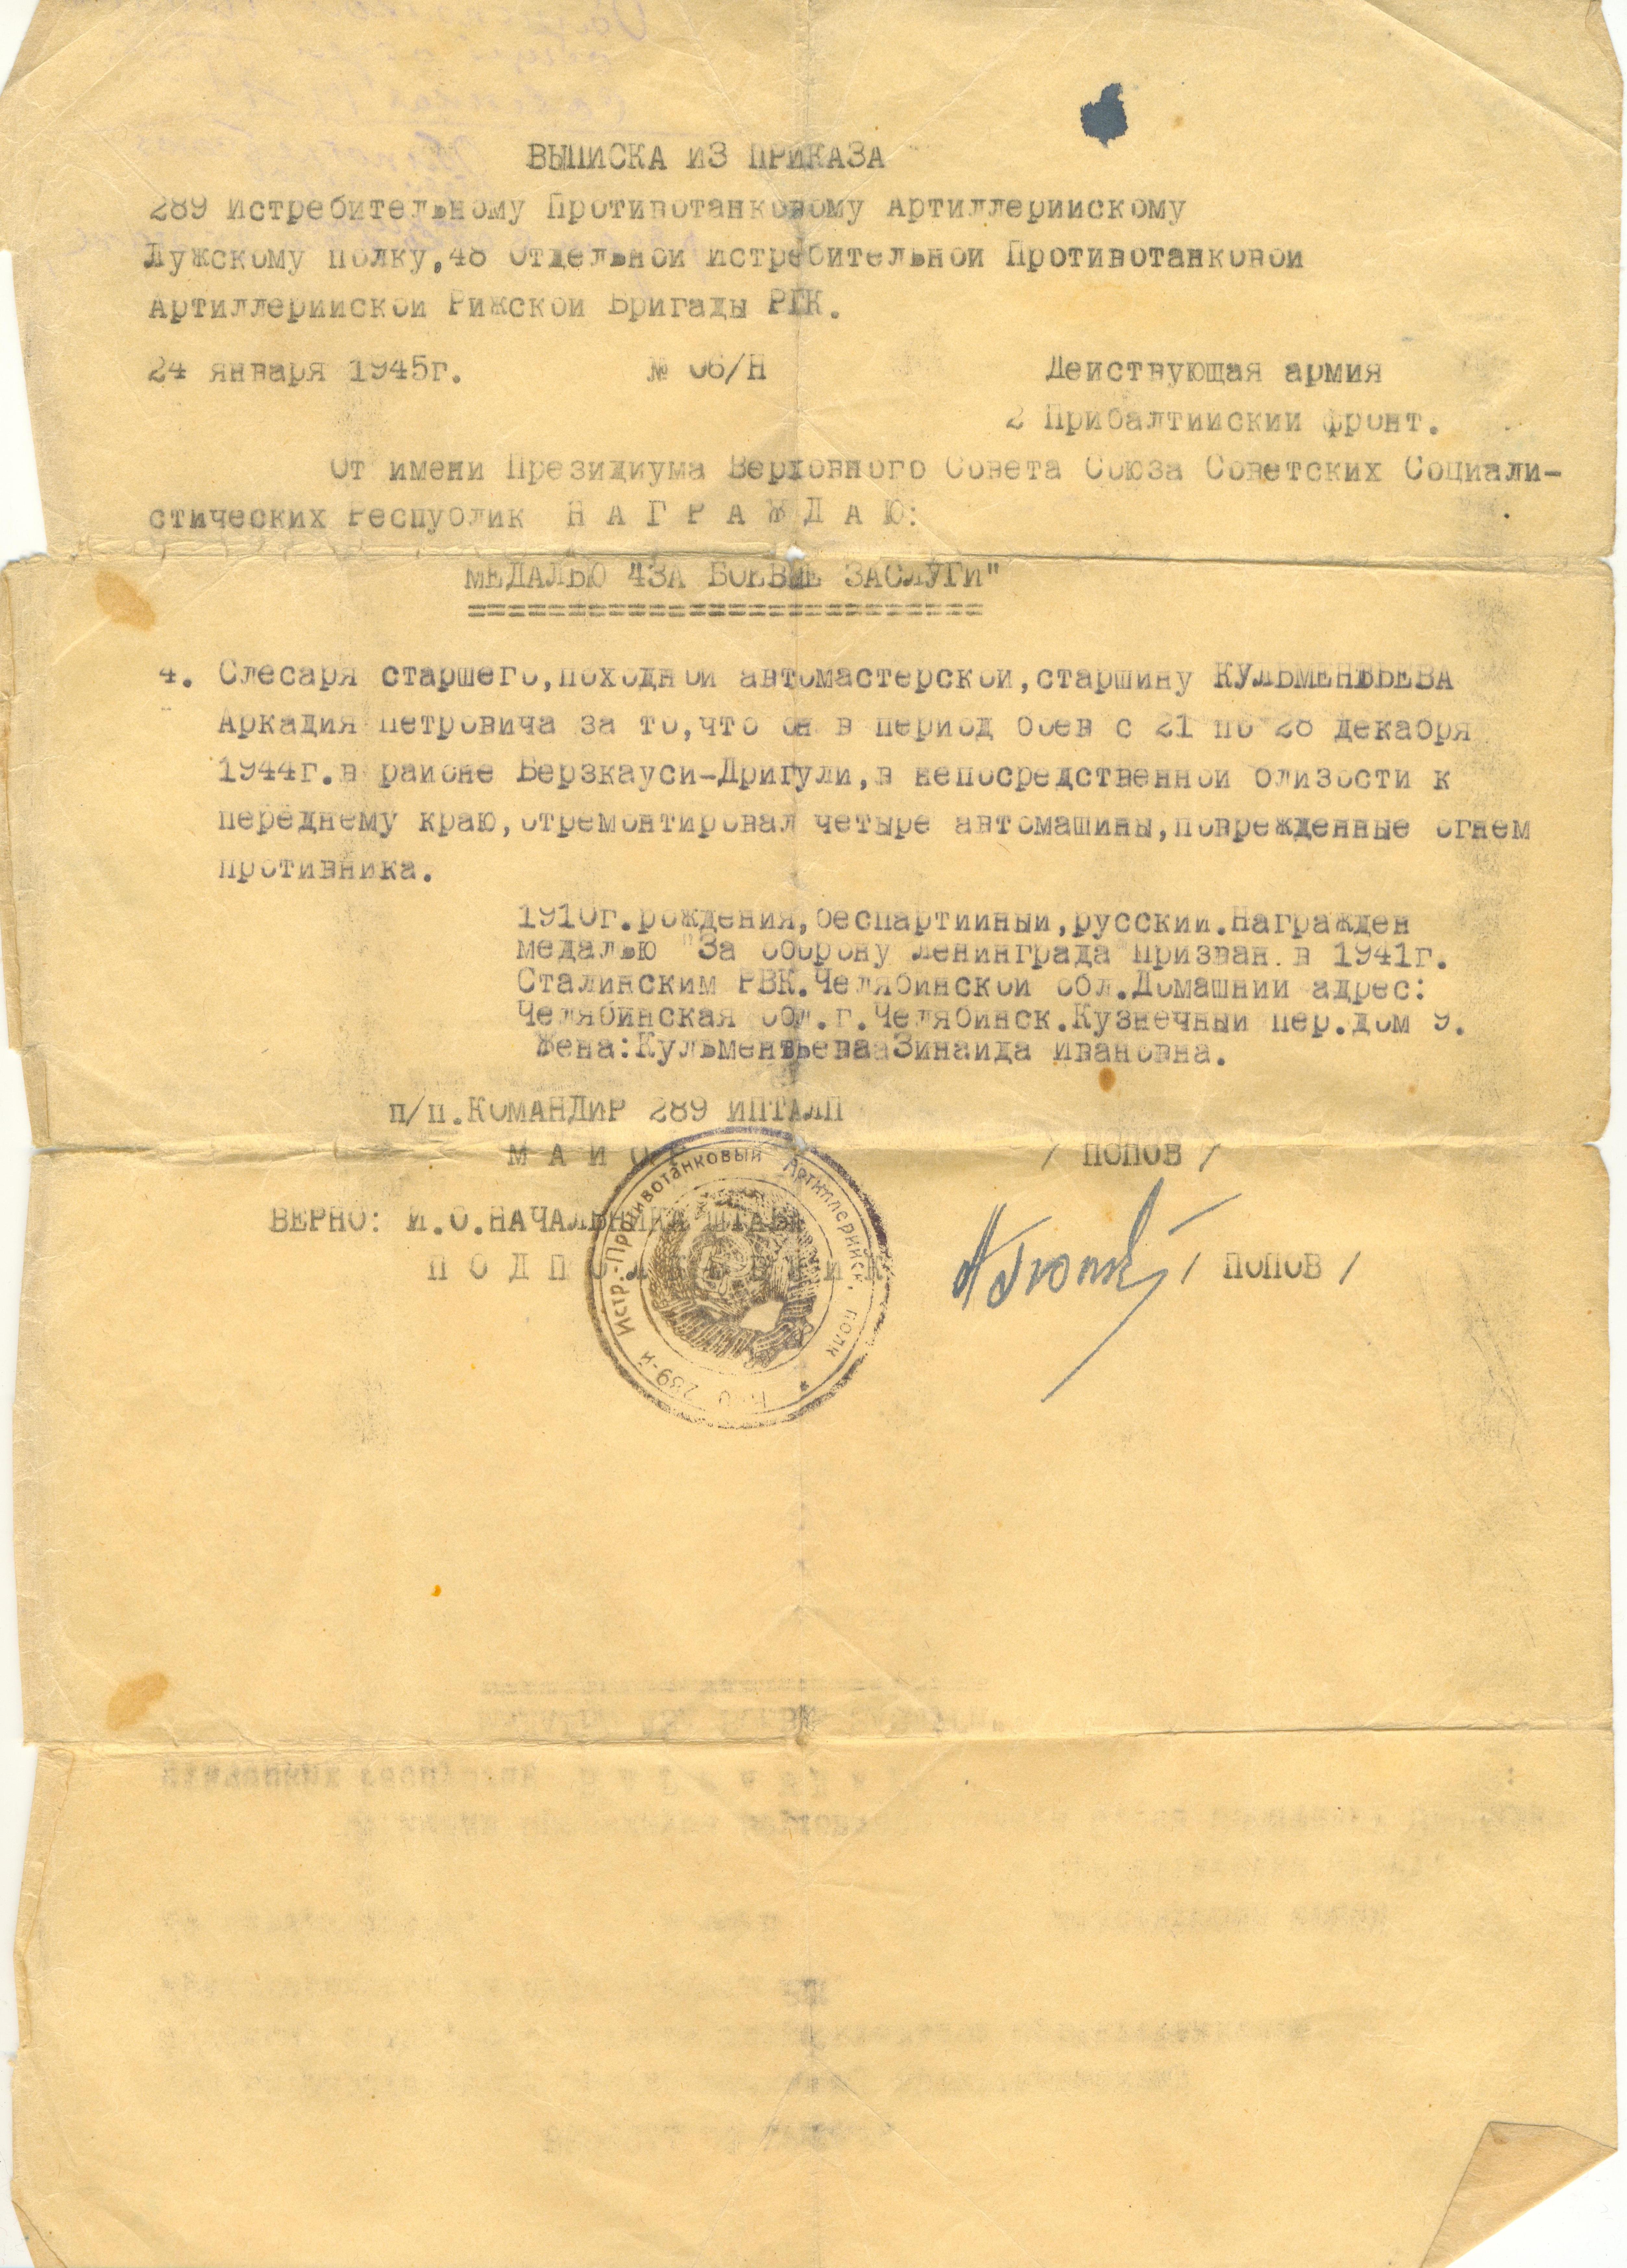 выписка из приказа о награждении медалью, май 1945 года